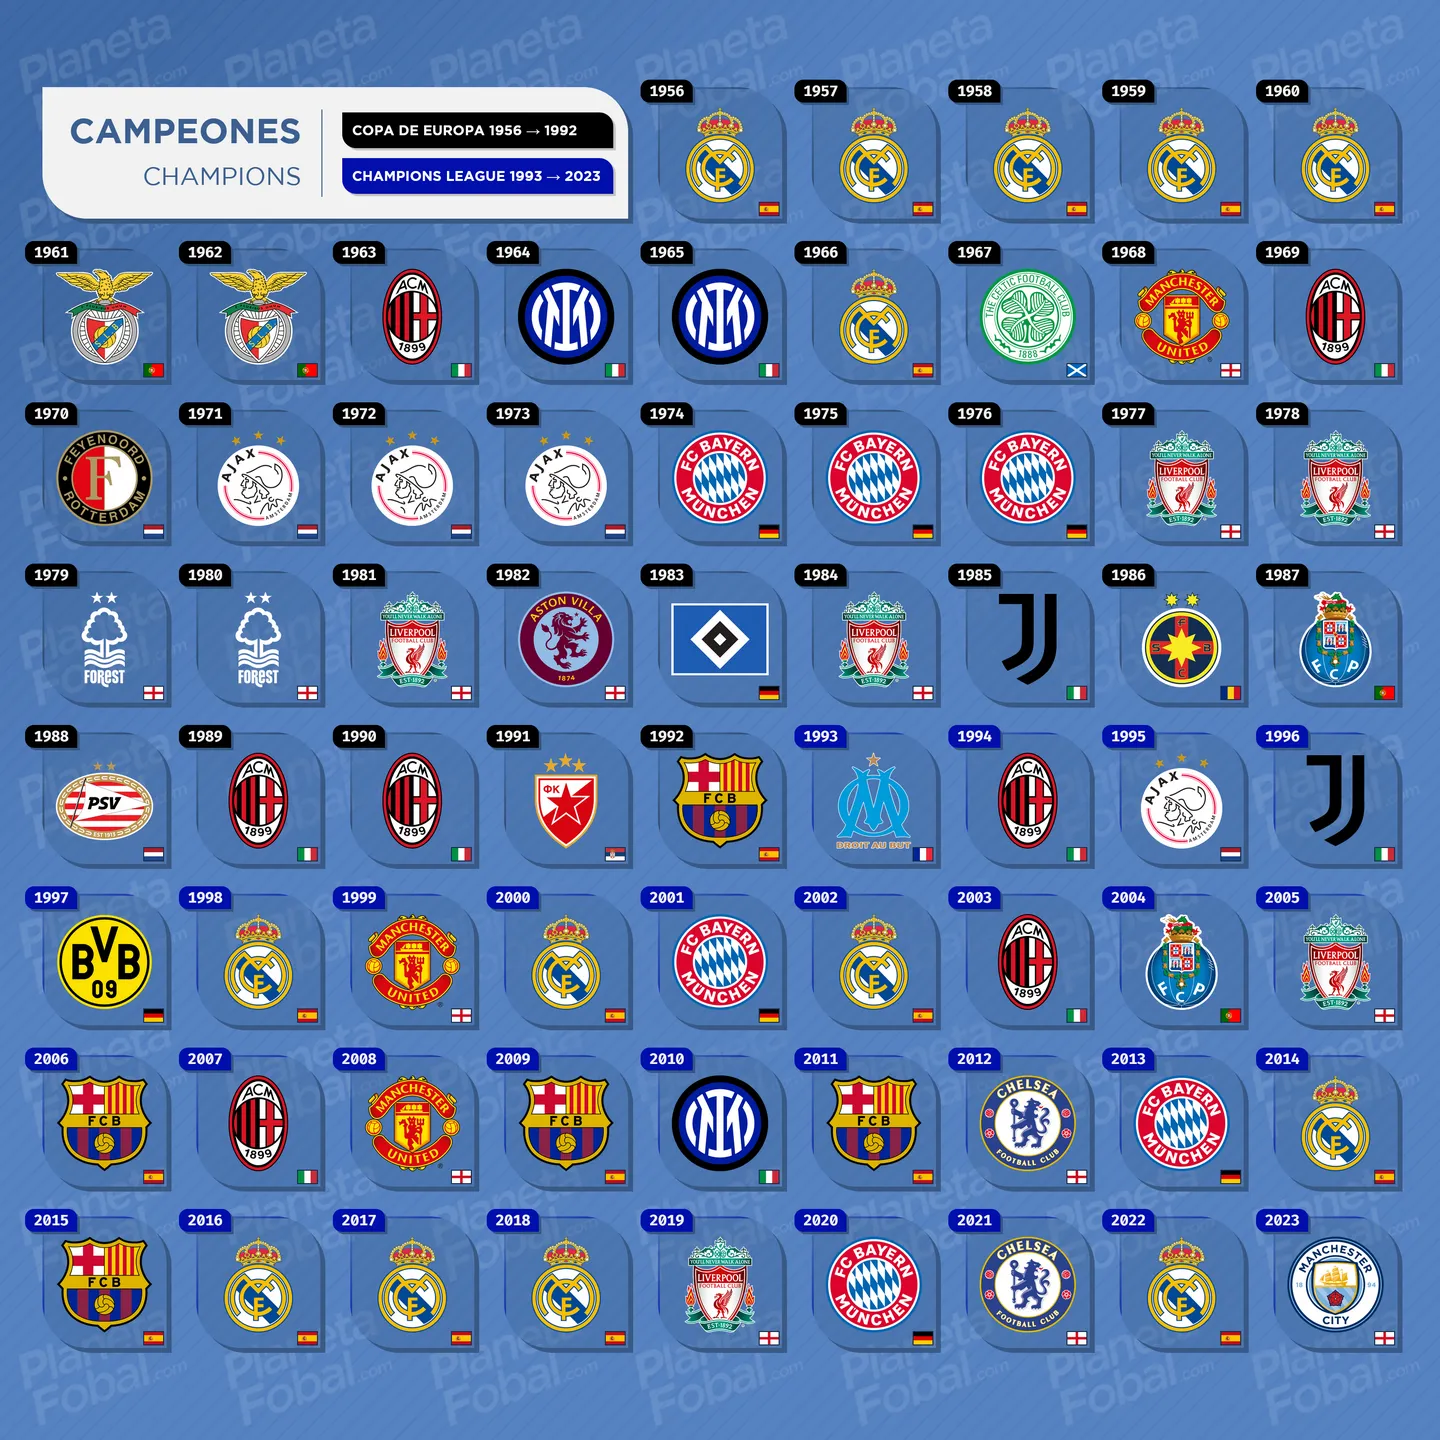 Campeones Copa de Europa / Champions League (1956 → 2023)